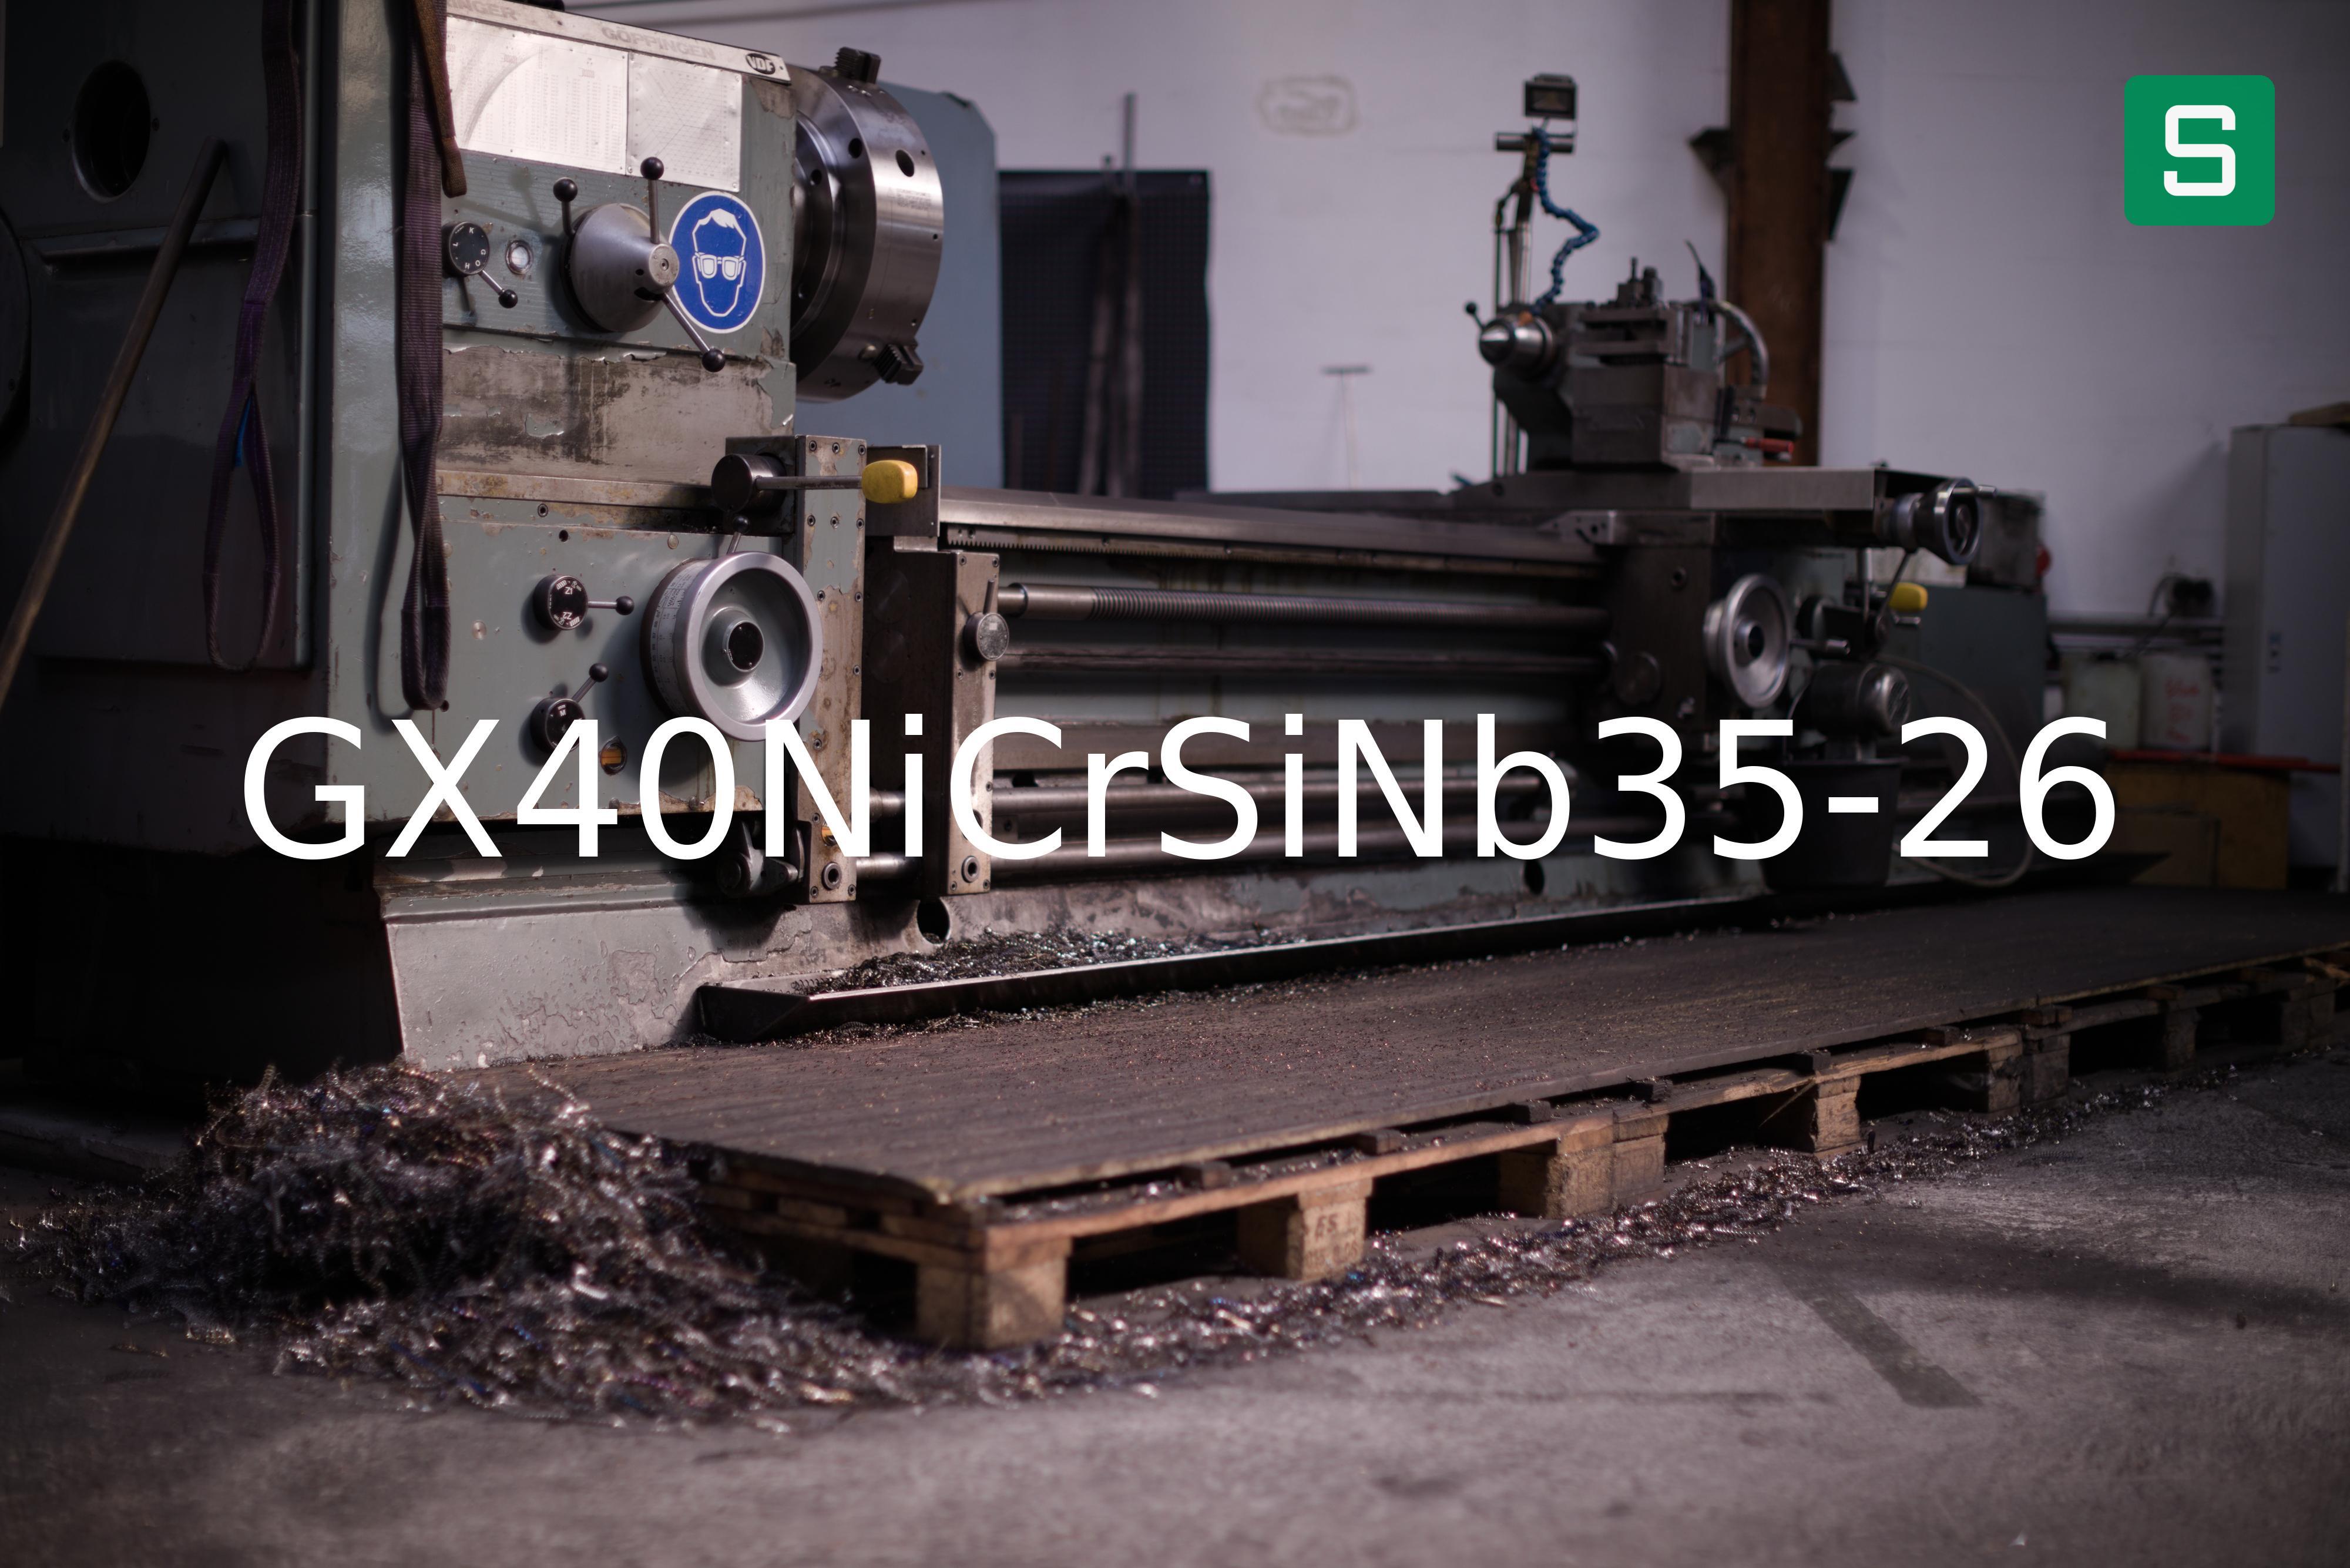 Steel Material: GX40NiCrSiNb35-26